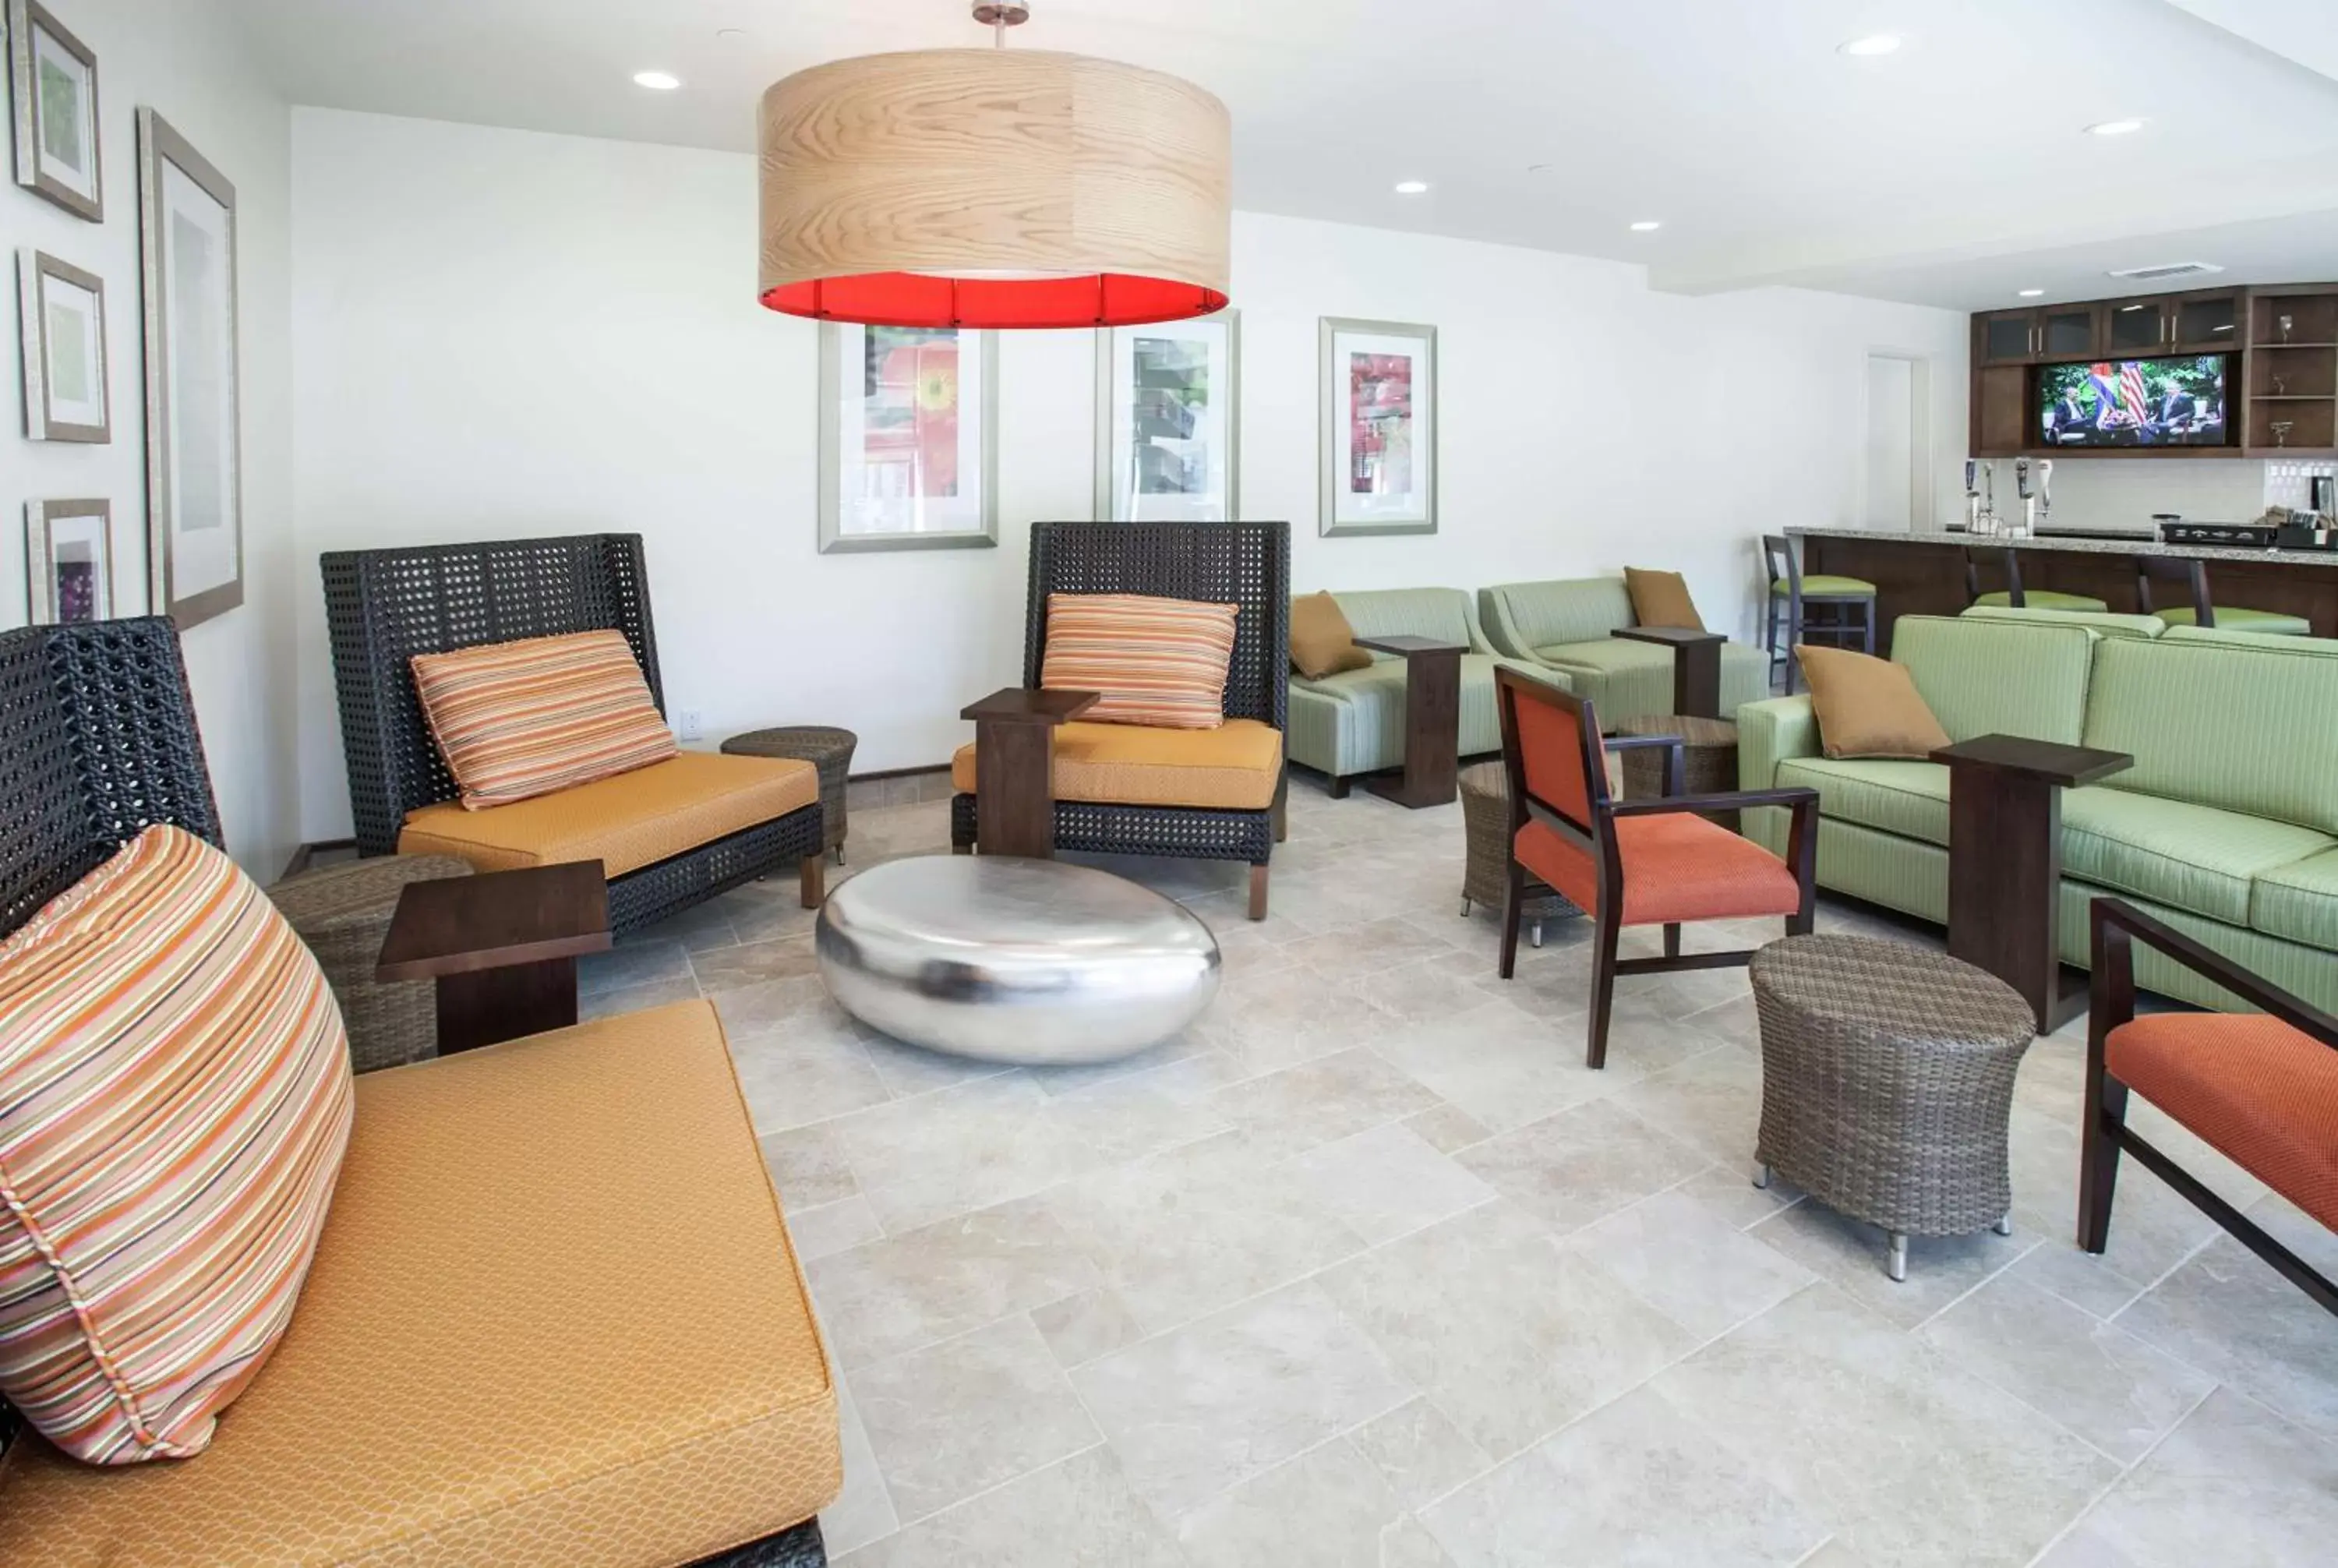 Lobby or reception, Seating Area in Hilton Garden Inn Jackson/Flowood